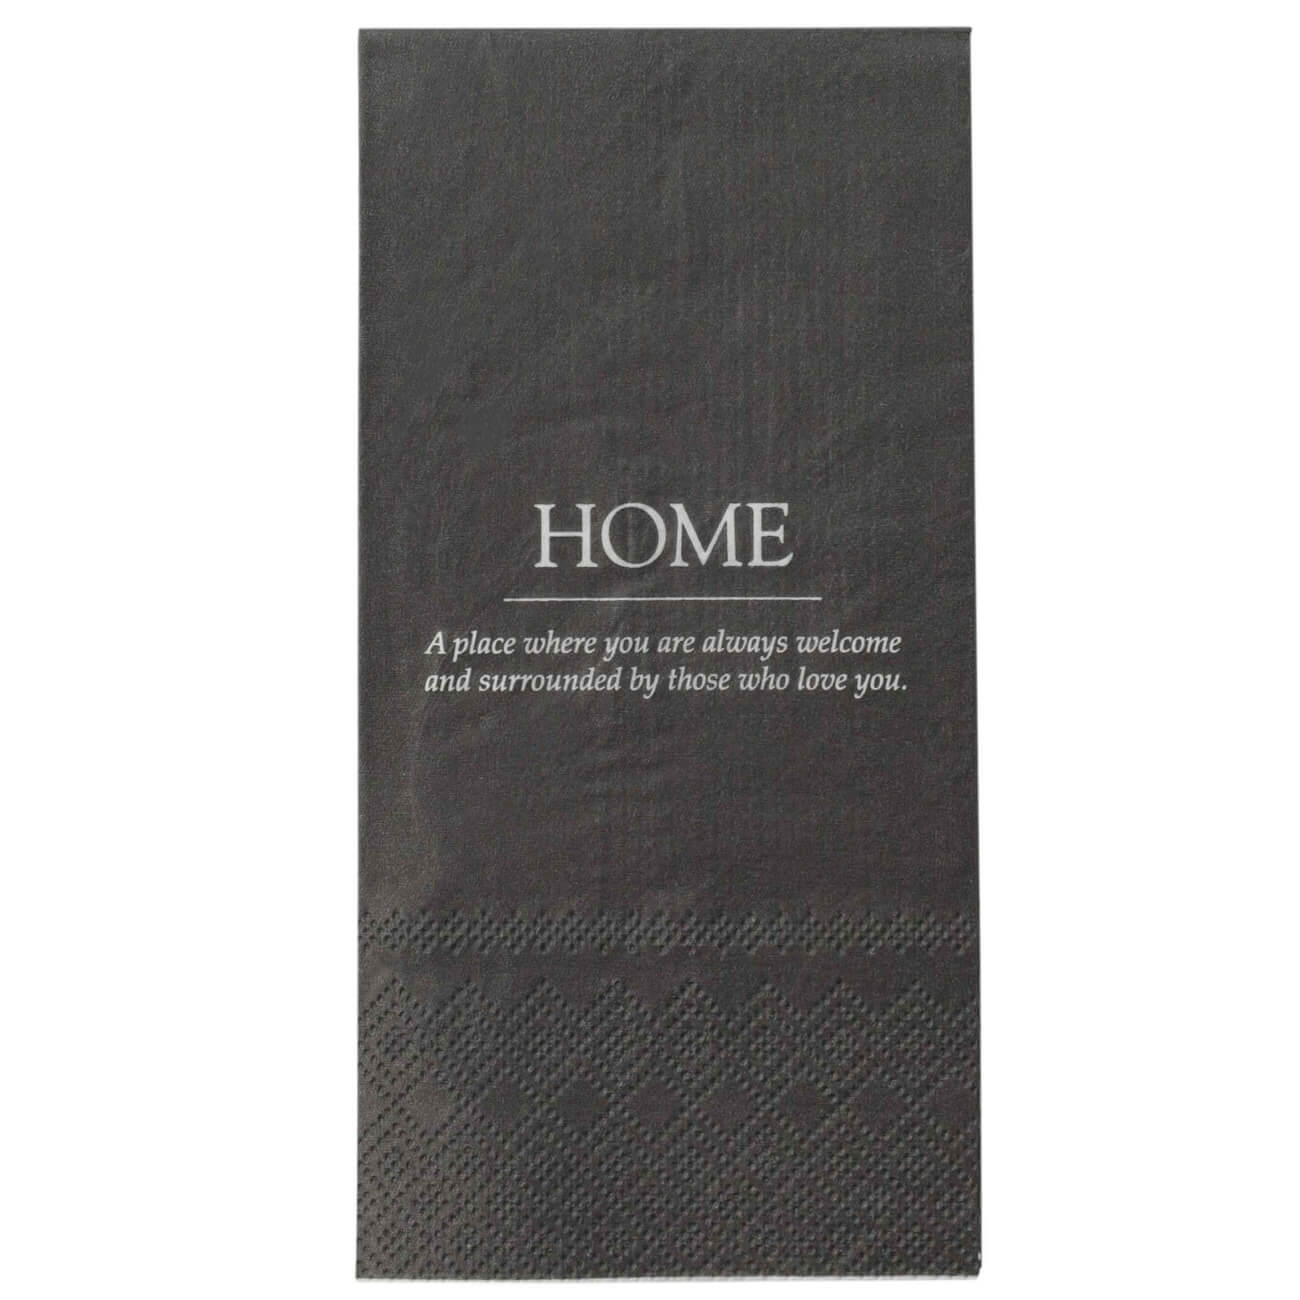 Салфетки бумажные, 33х33 см, 20 шт, прямоугольные, черные, Home, Course салфетки для пластиковых поверхностей durable